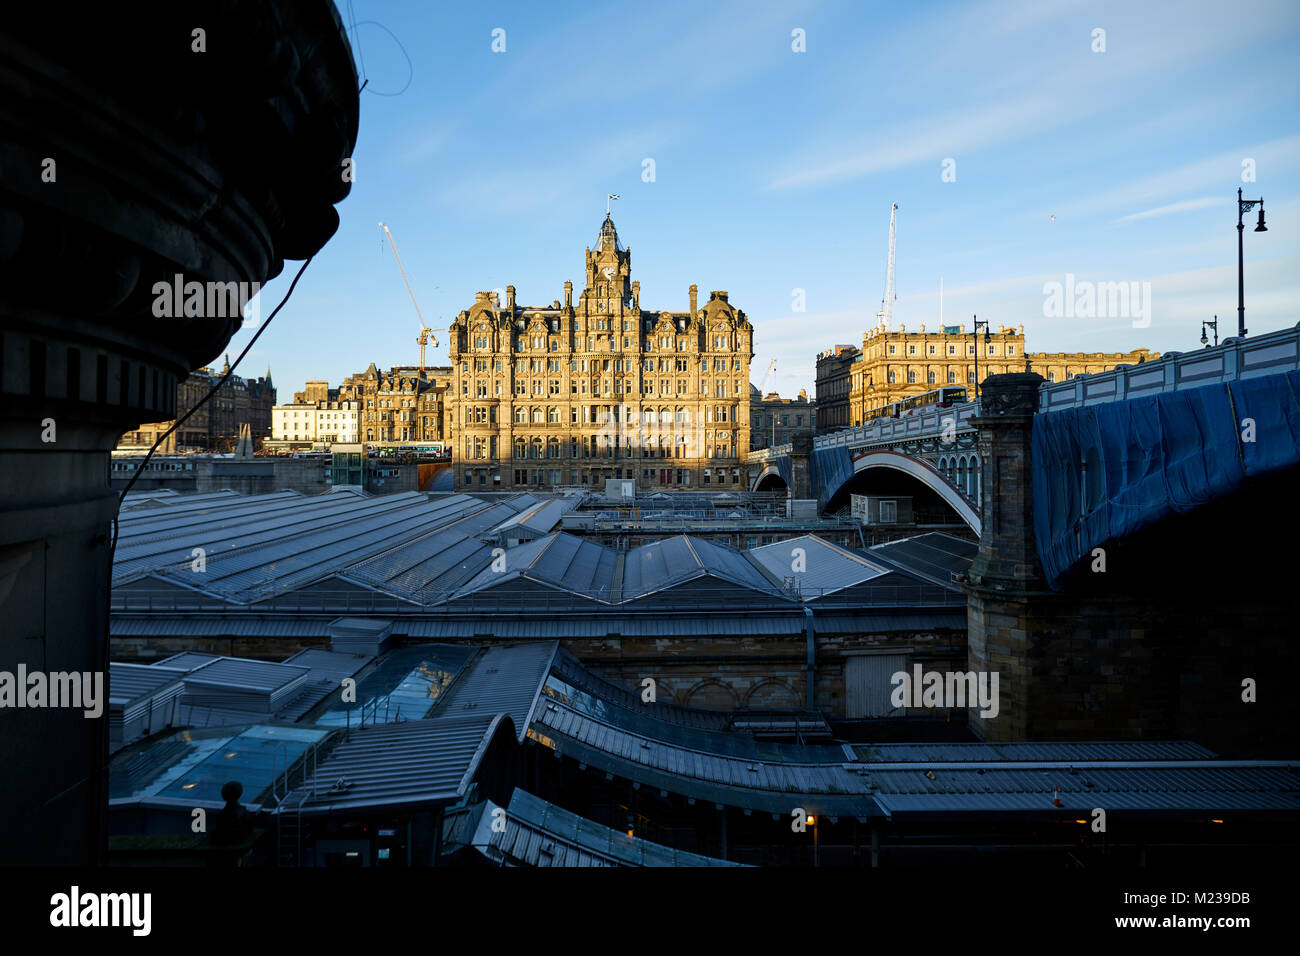 Edinburgh Hauptstadt von Schottland, das Balmoral Hotel ursprünglich gebaut als das North British Station Hotel 5 Sterne Luxus Wahrzeichen an der Princes Street Stockfoto